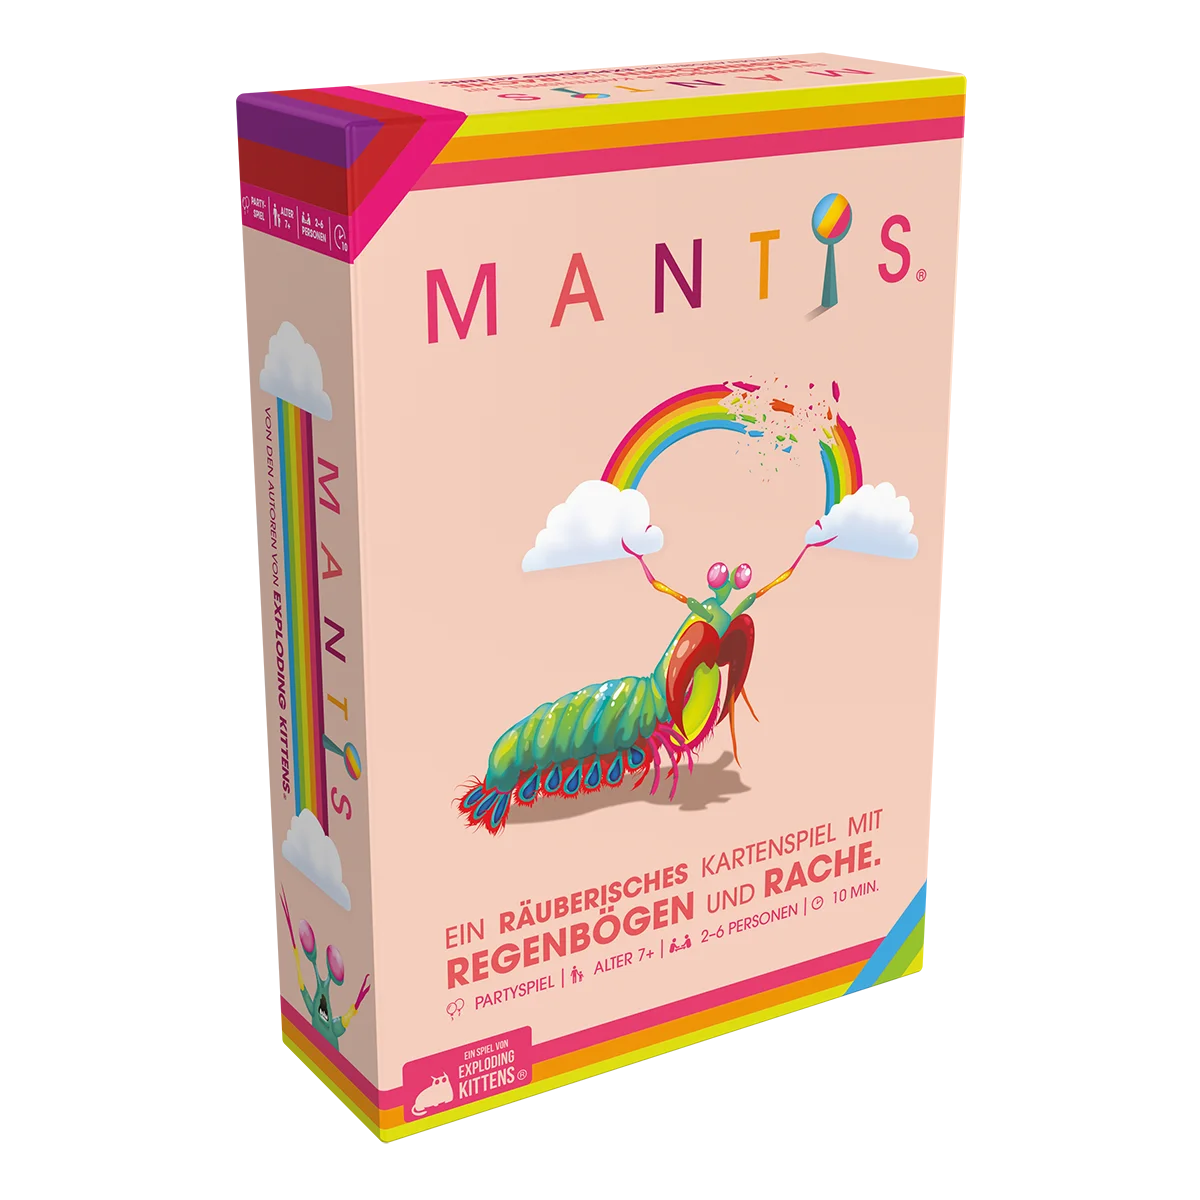 Mantis ist ein räuberisches Kartenspiel